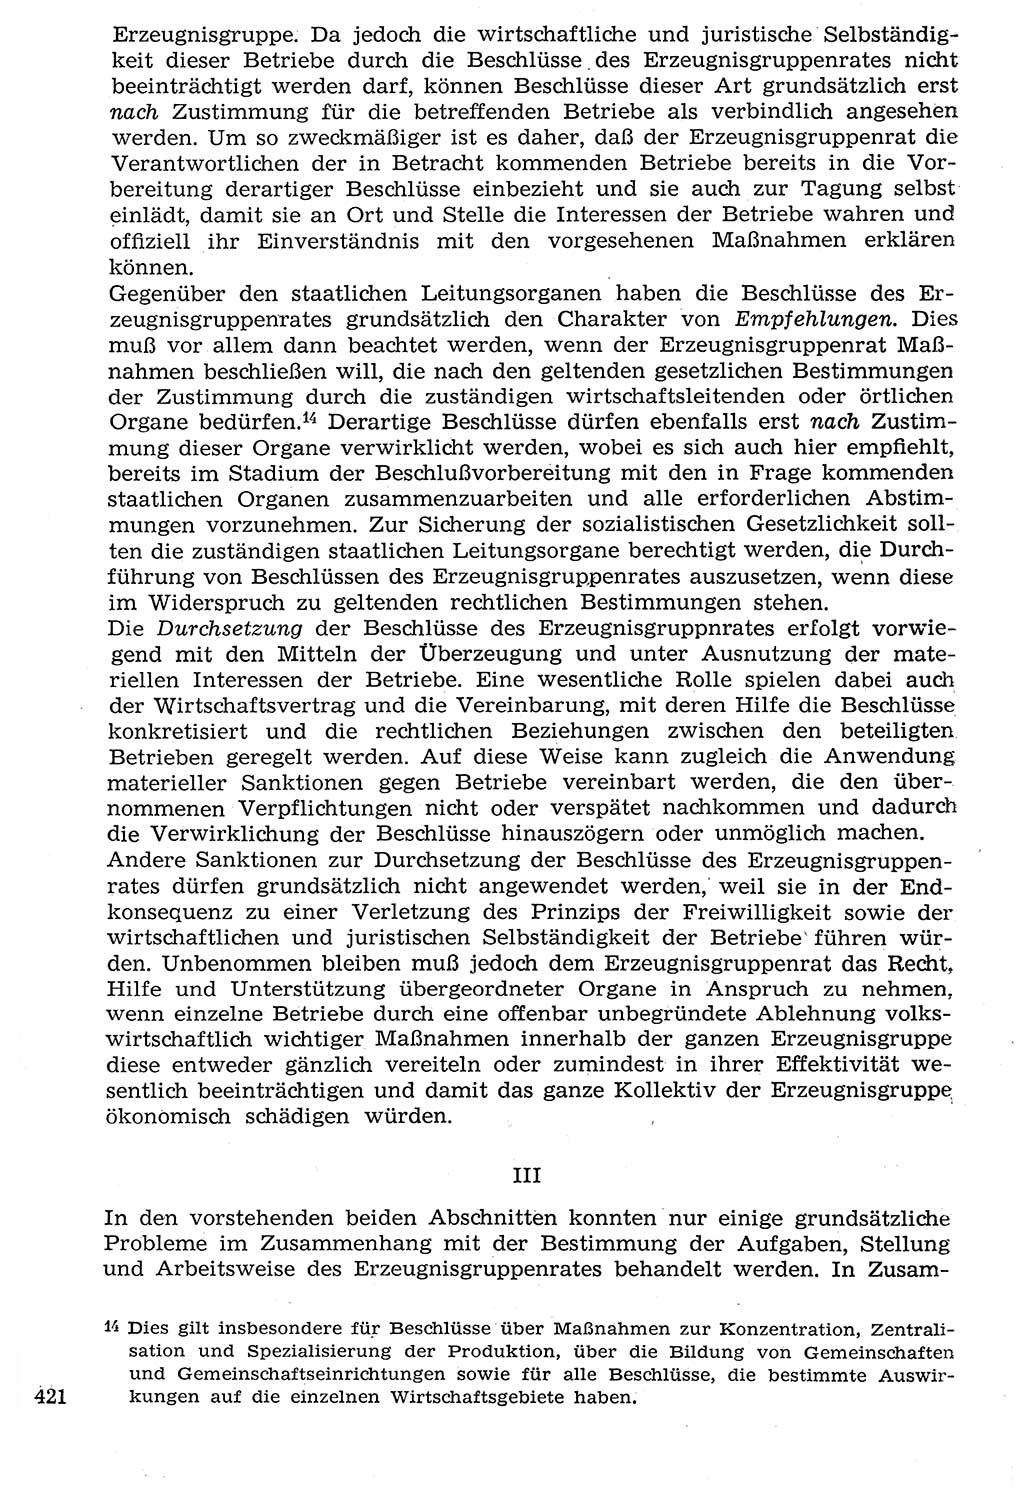 Staat und Recht (StuR), 17. Jahrgang [Deutsche Demokratische Republik (DDR)] 1968, Seite 421 (StuR DDR 1968, S. 421)